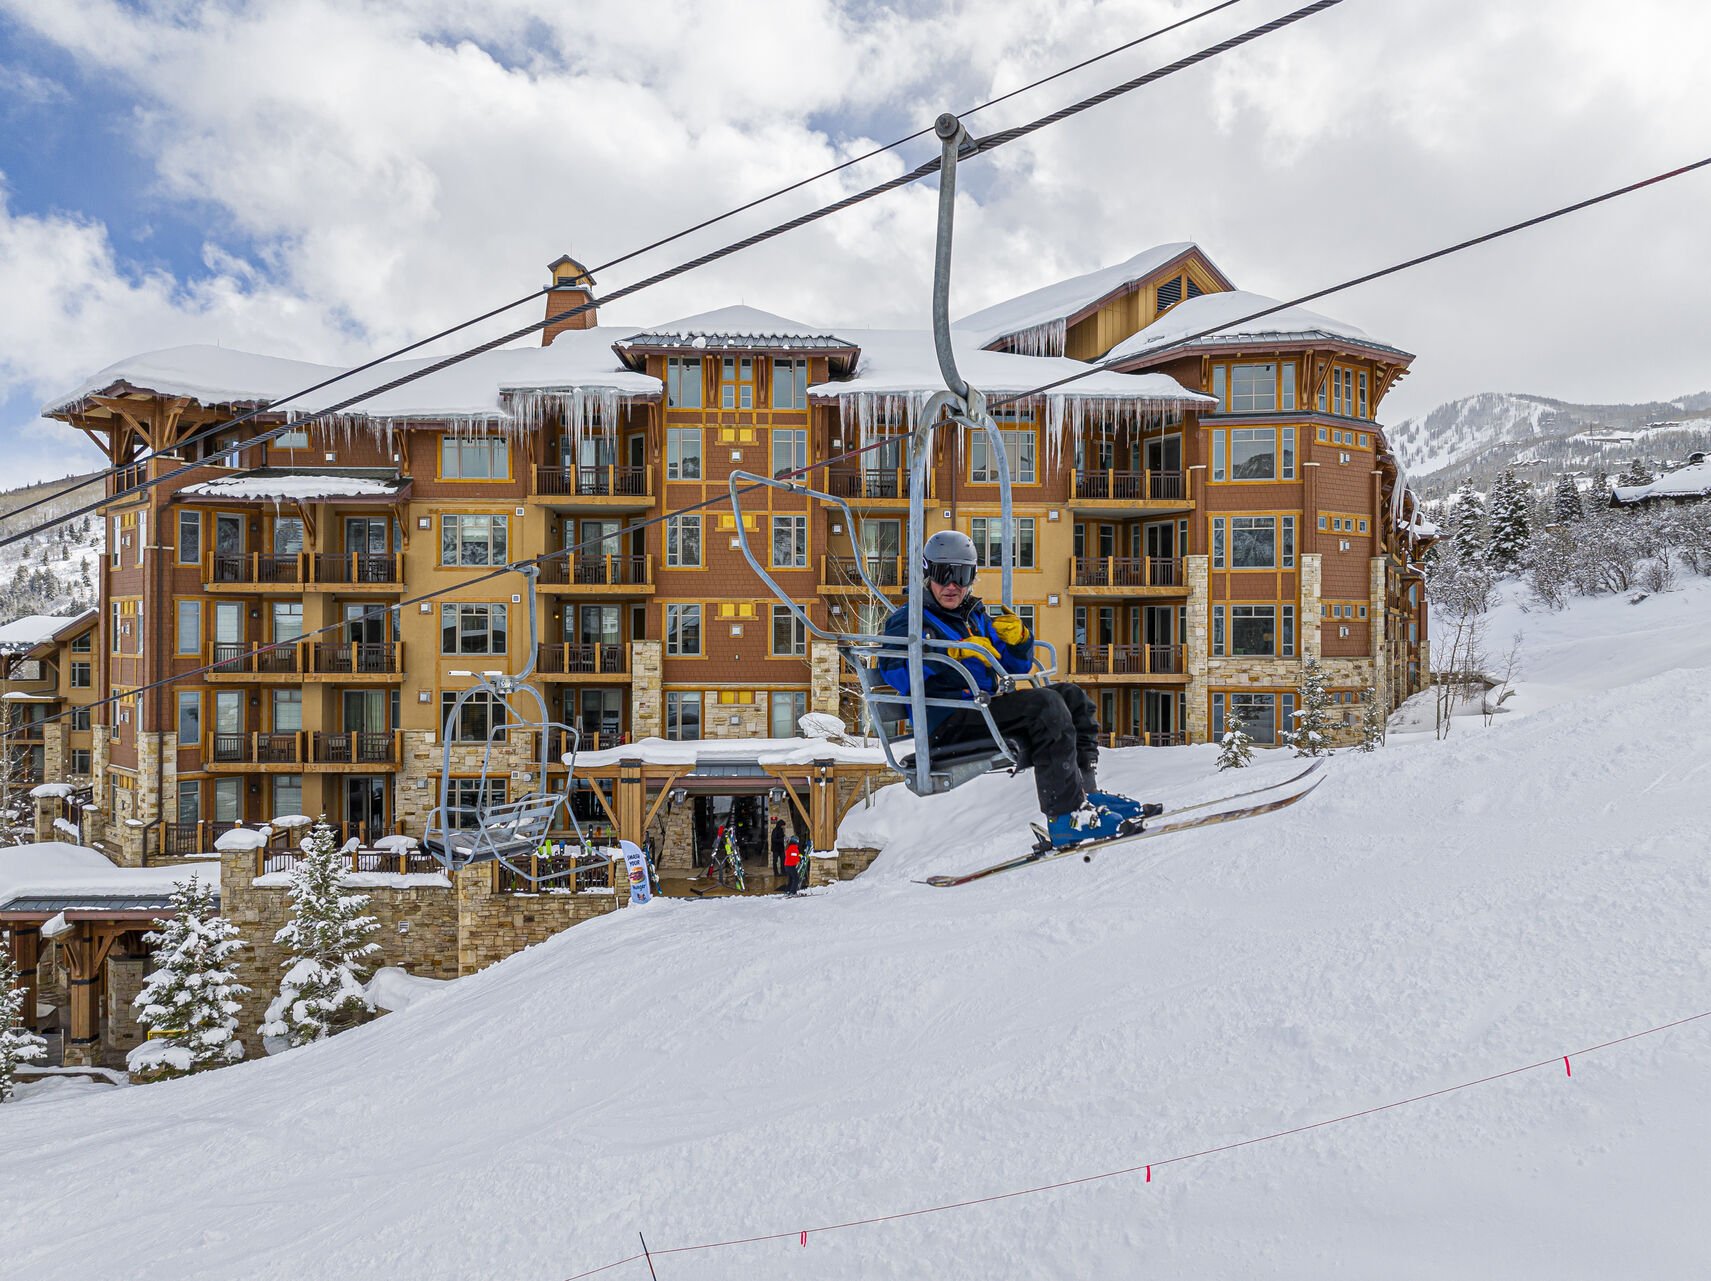 Ski-in/ski-out with ski valet